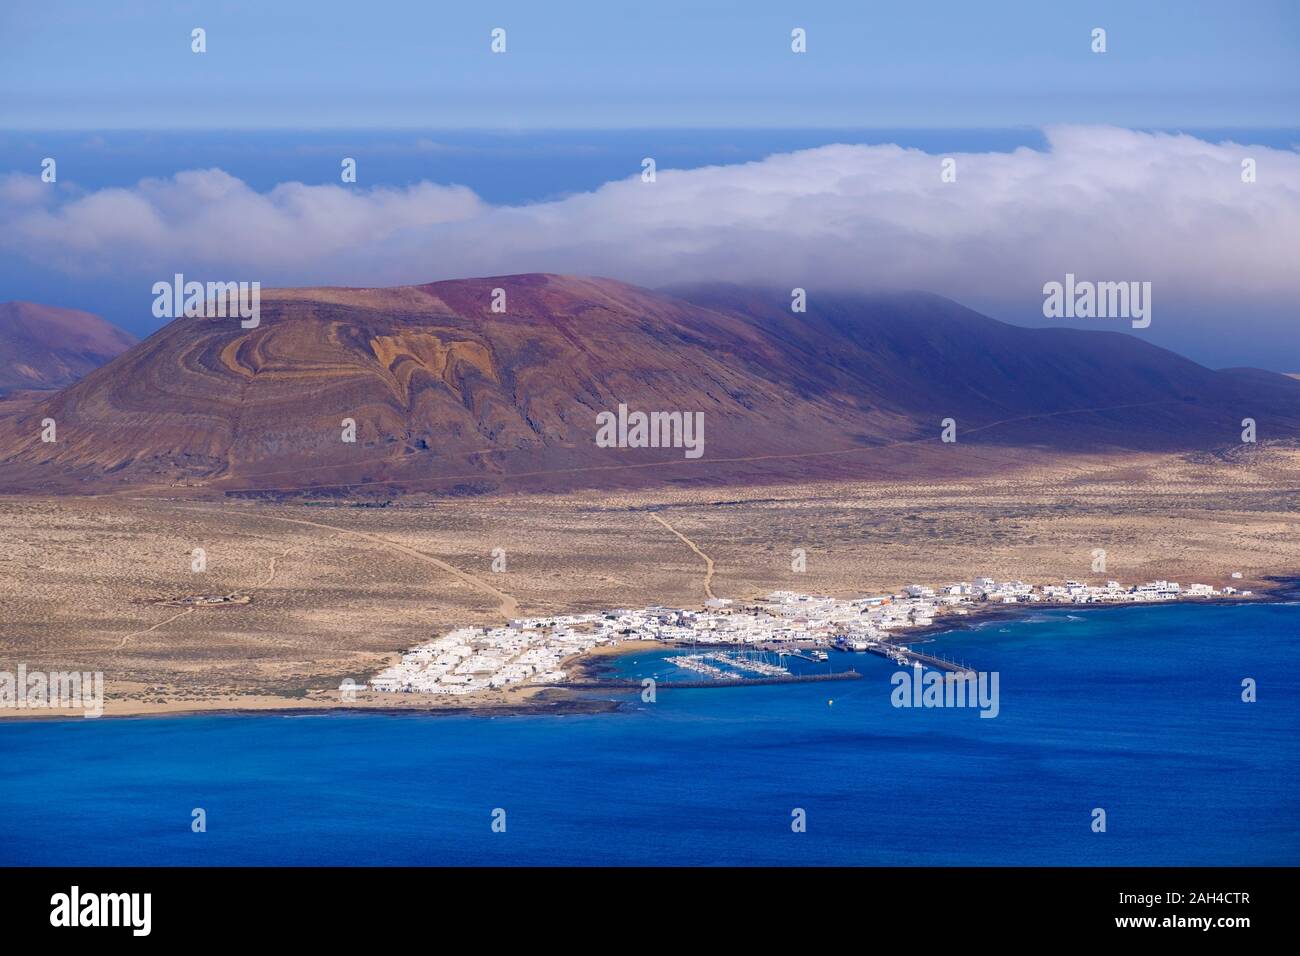 España, Islas Canarias, Caleta del Sebo, vista panorámica del litoral volcánico de la isla de La Graciosa Foto de stock